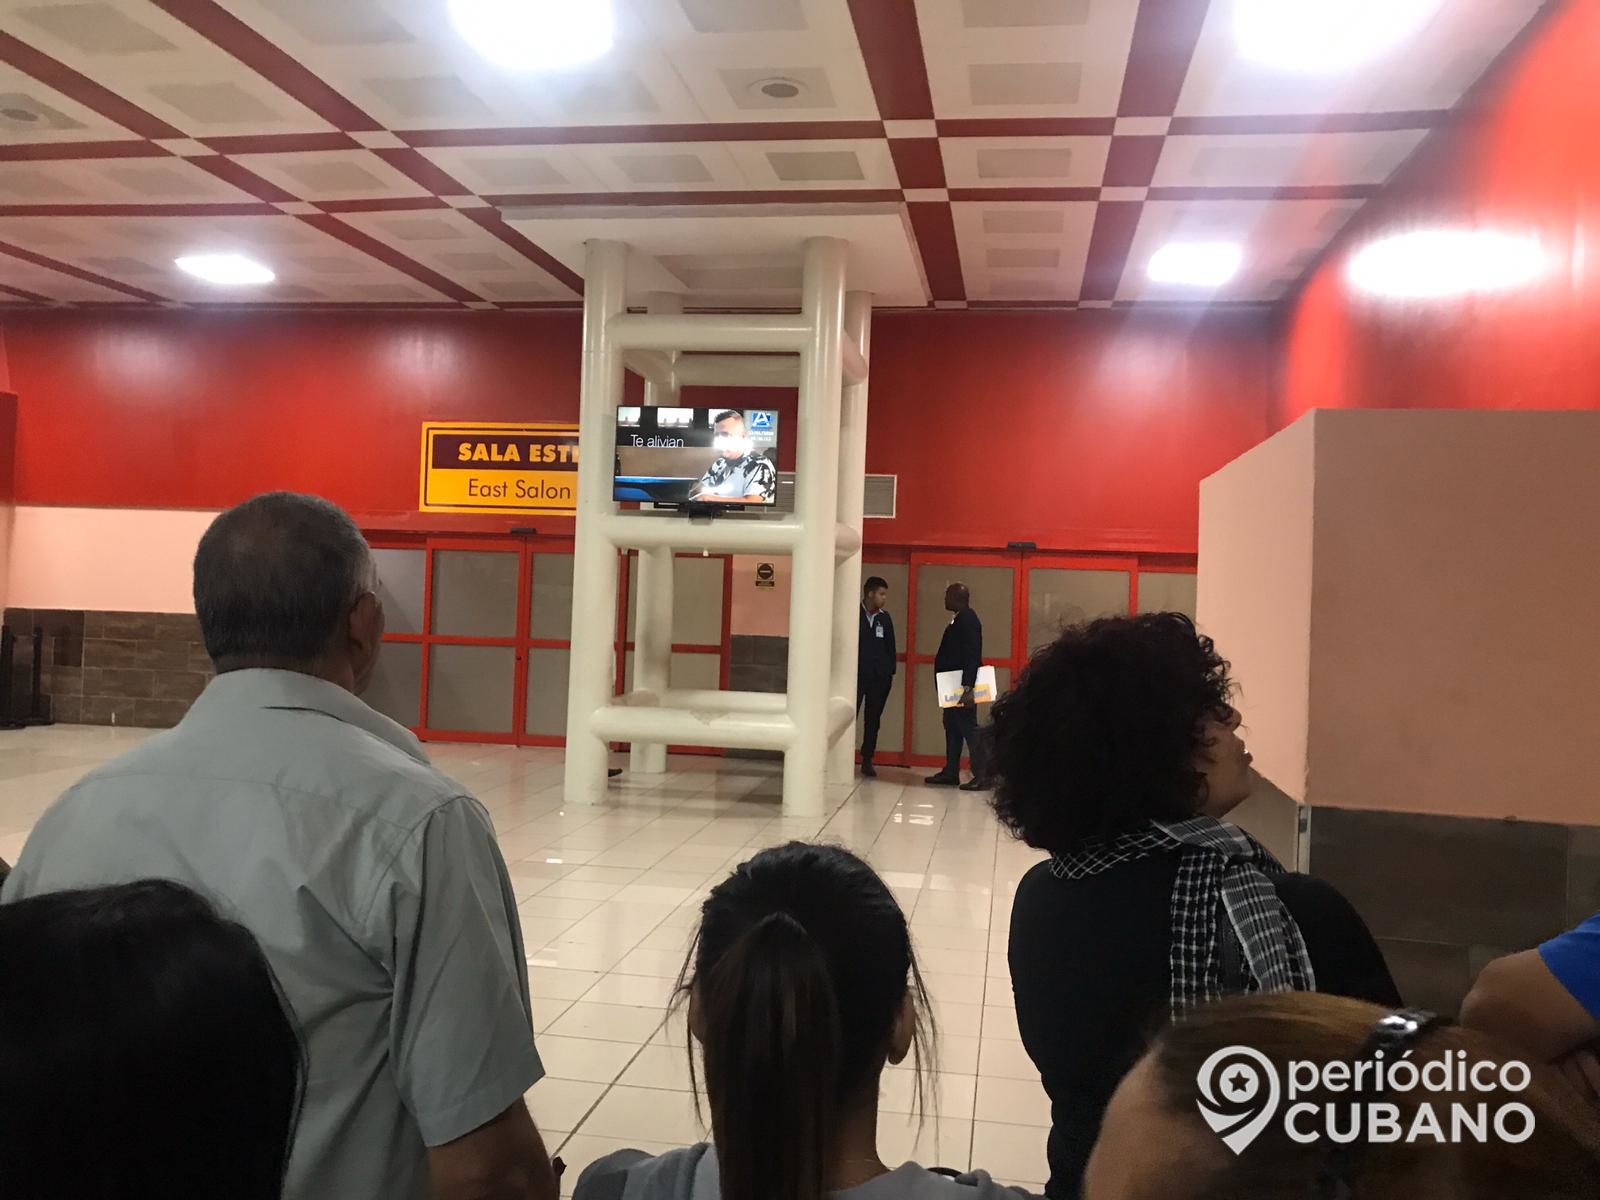 Noticias de Cuba más leídas: Aeropuerto de La Habana realizarán test de COVID-19 a todos los viajeros